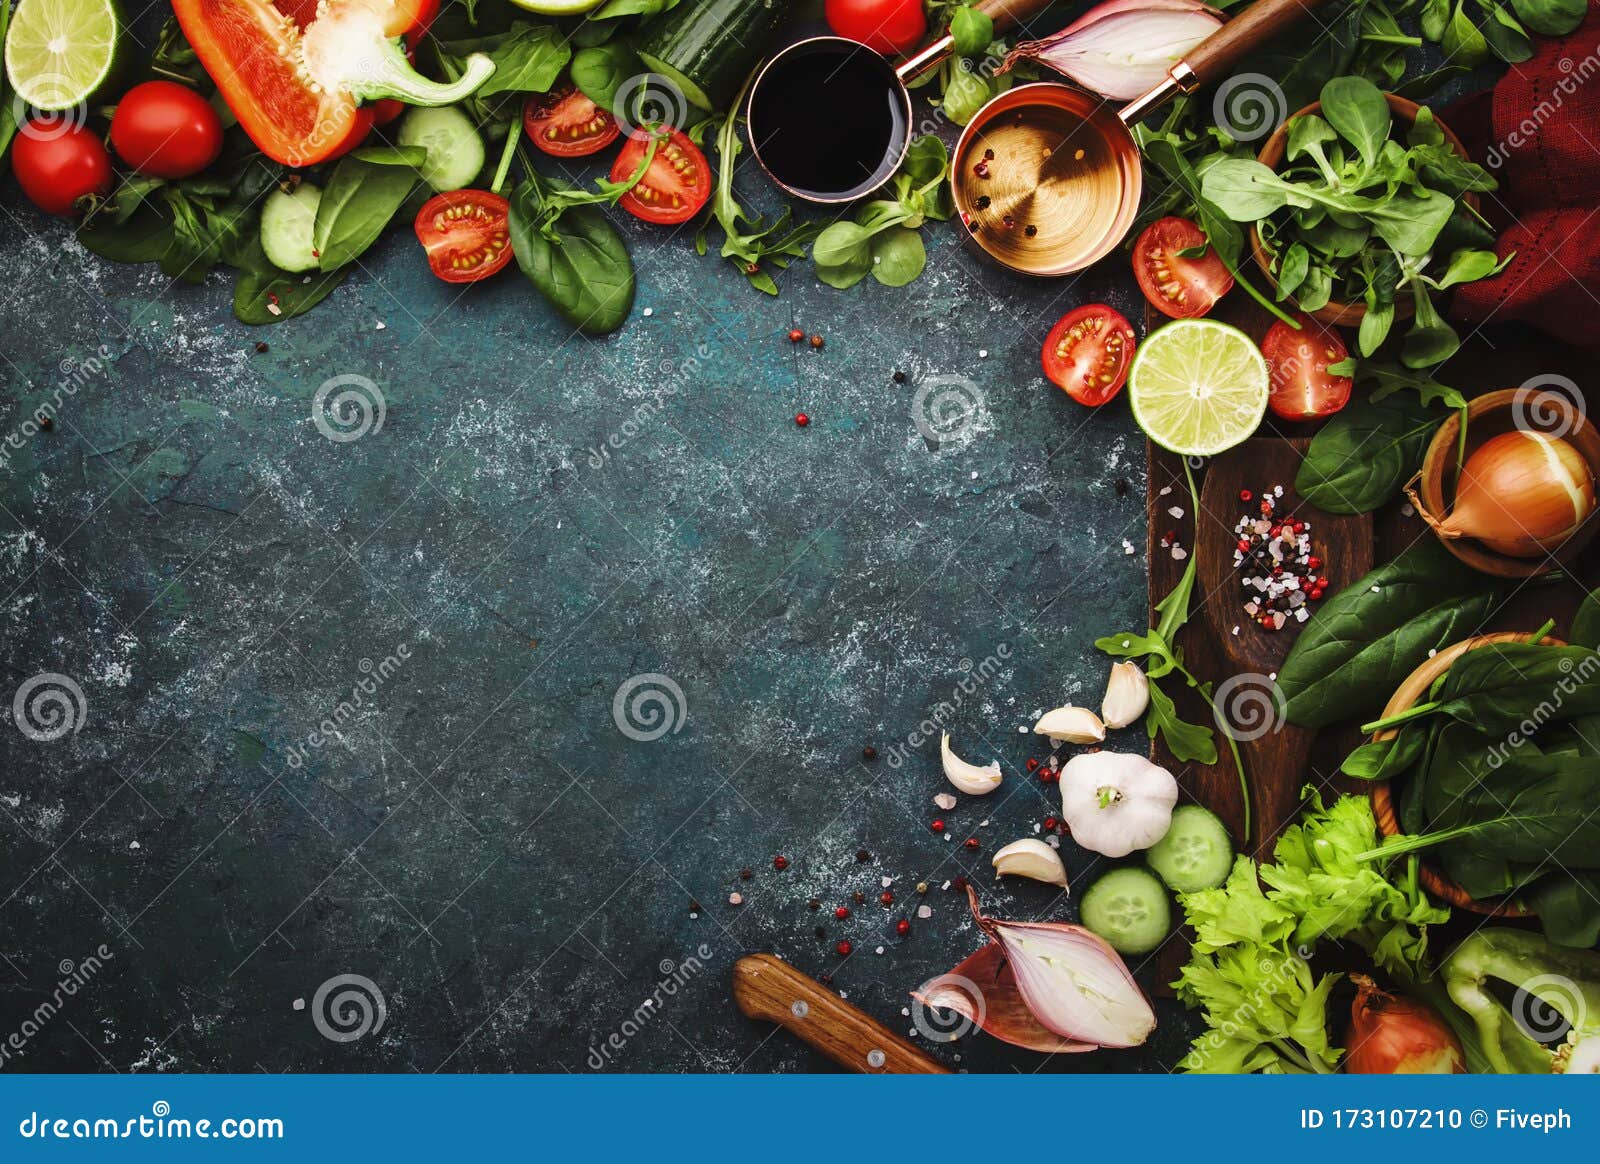 Fresh Healthy Food Cooking or Salad Making Ingredients on Dark ...